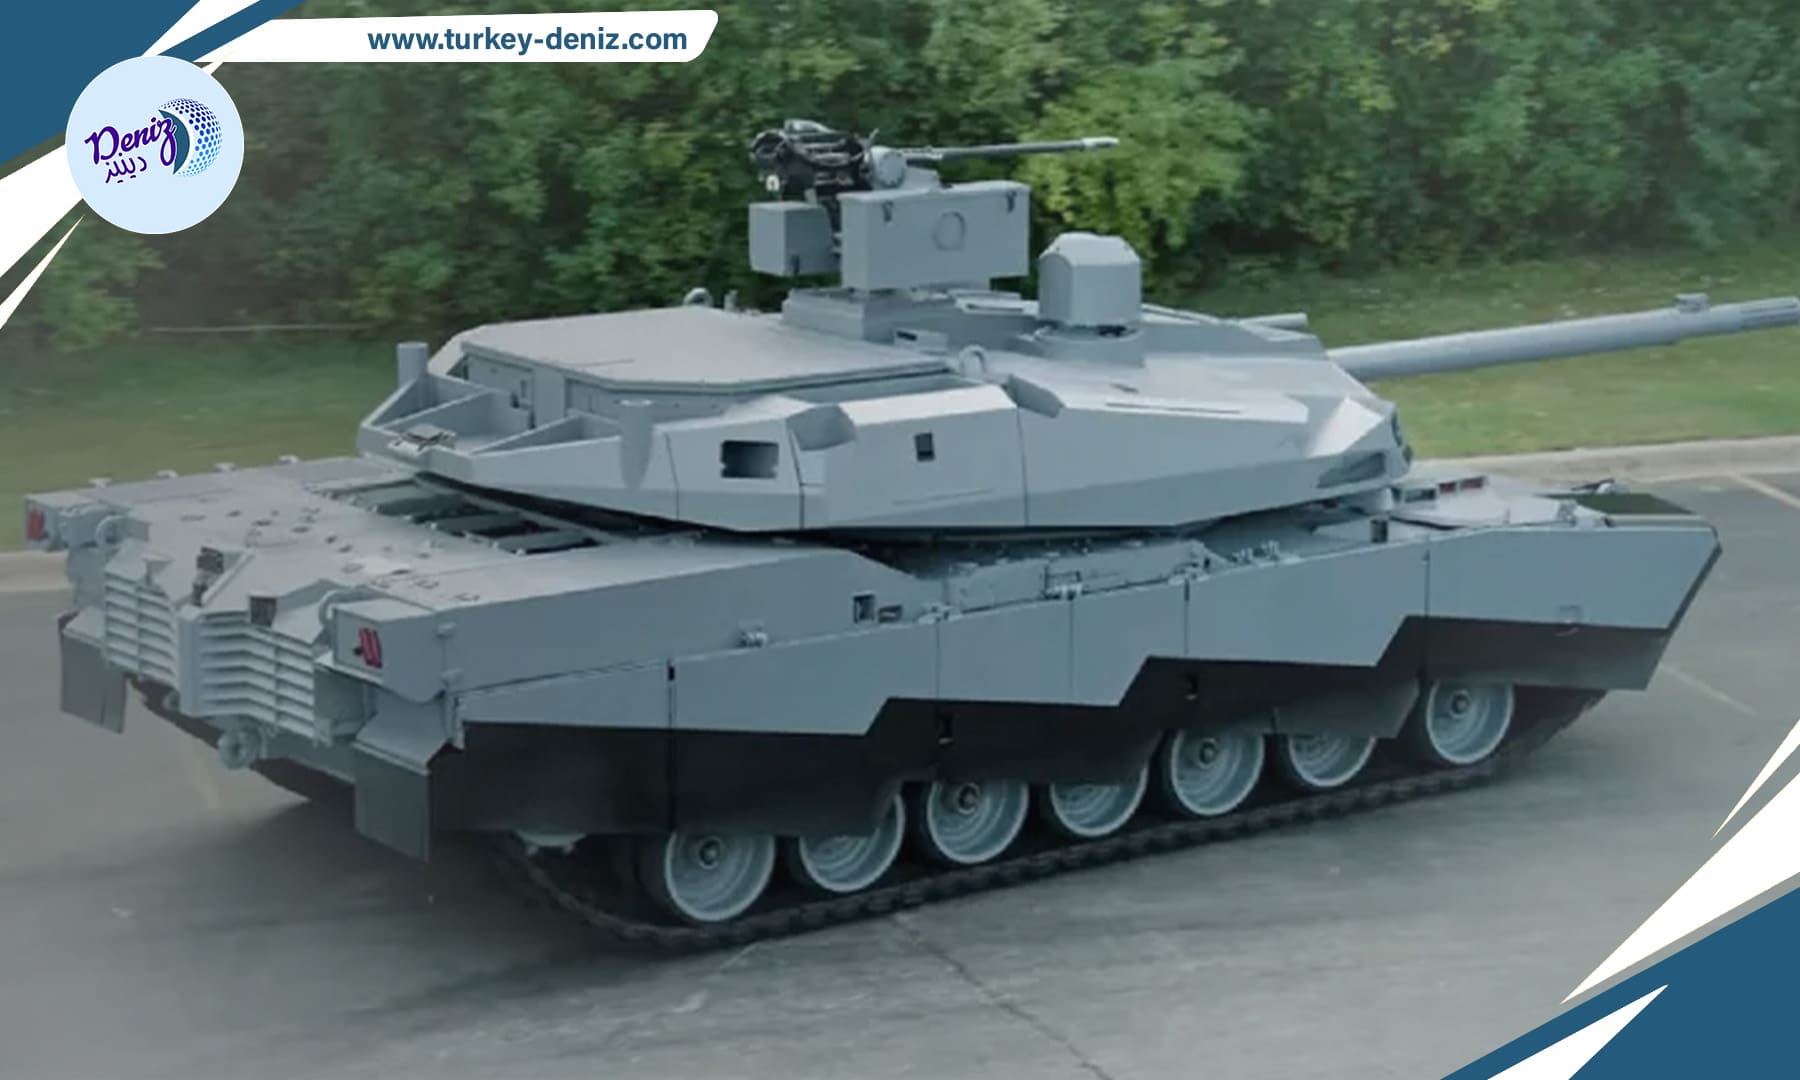 دبابة “أبرامز إكس” أحدث تكنولوجيا الدبابات الأمريكية بسبب تزويدها بالذكاء الصناعي